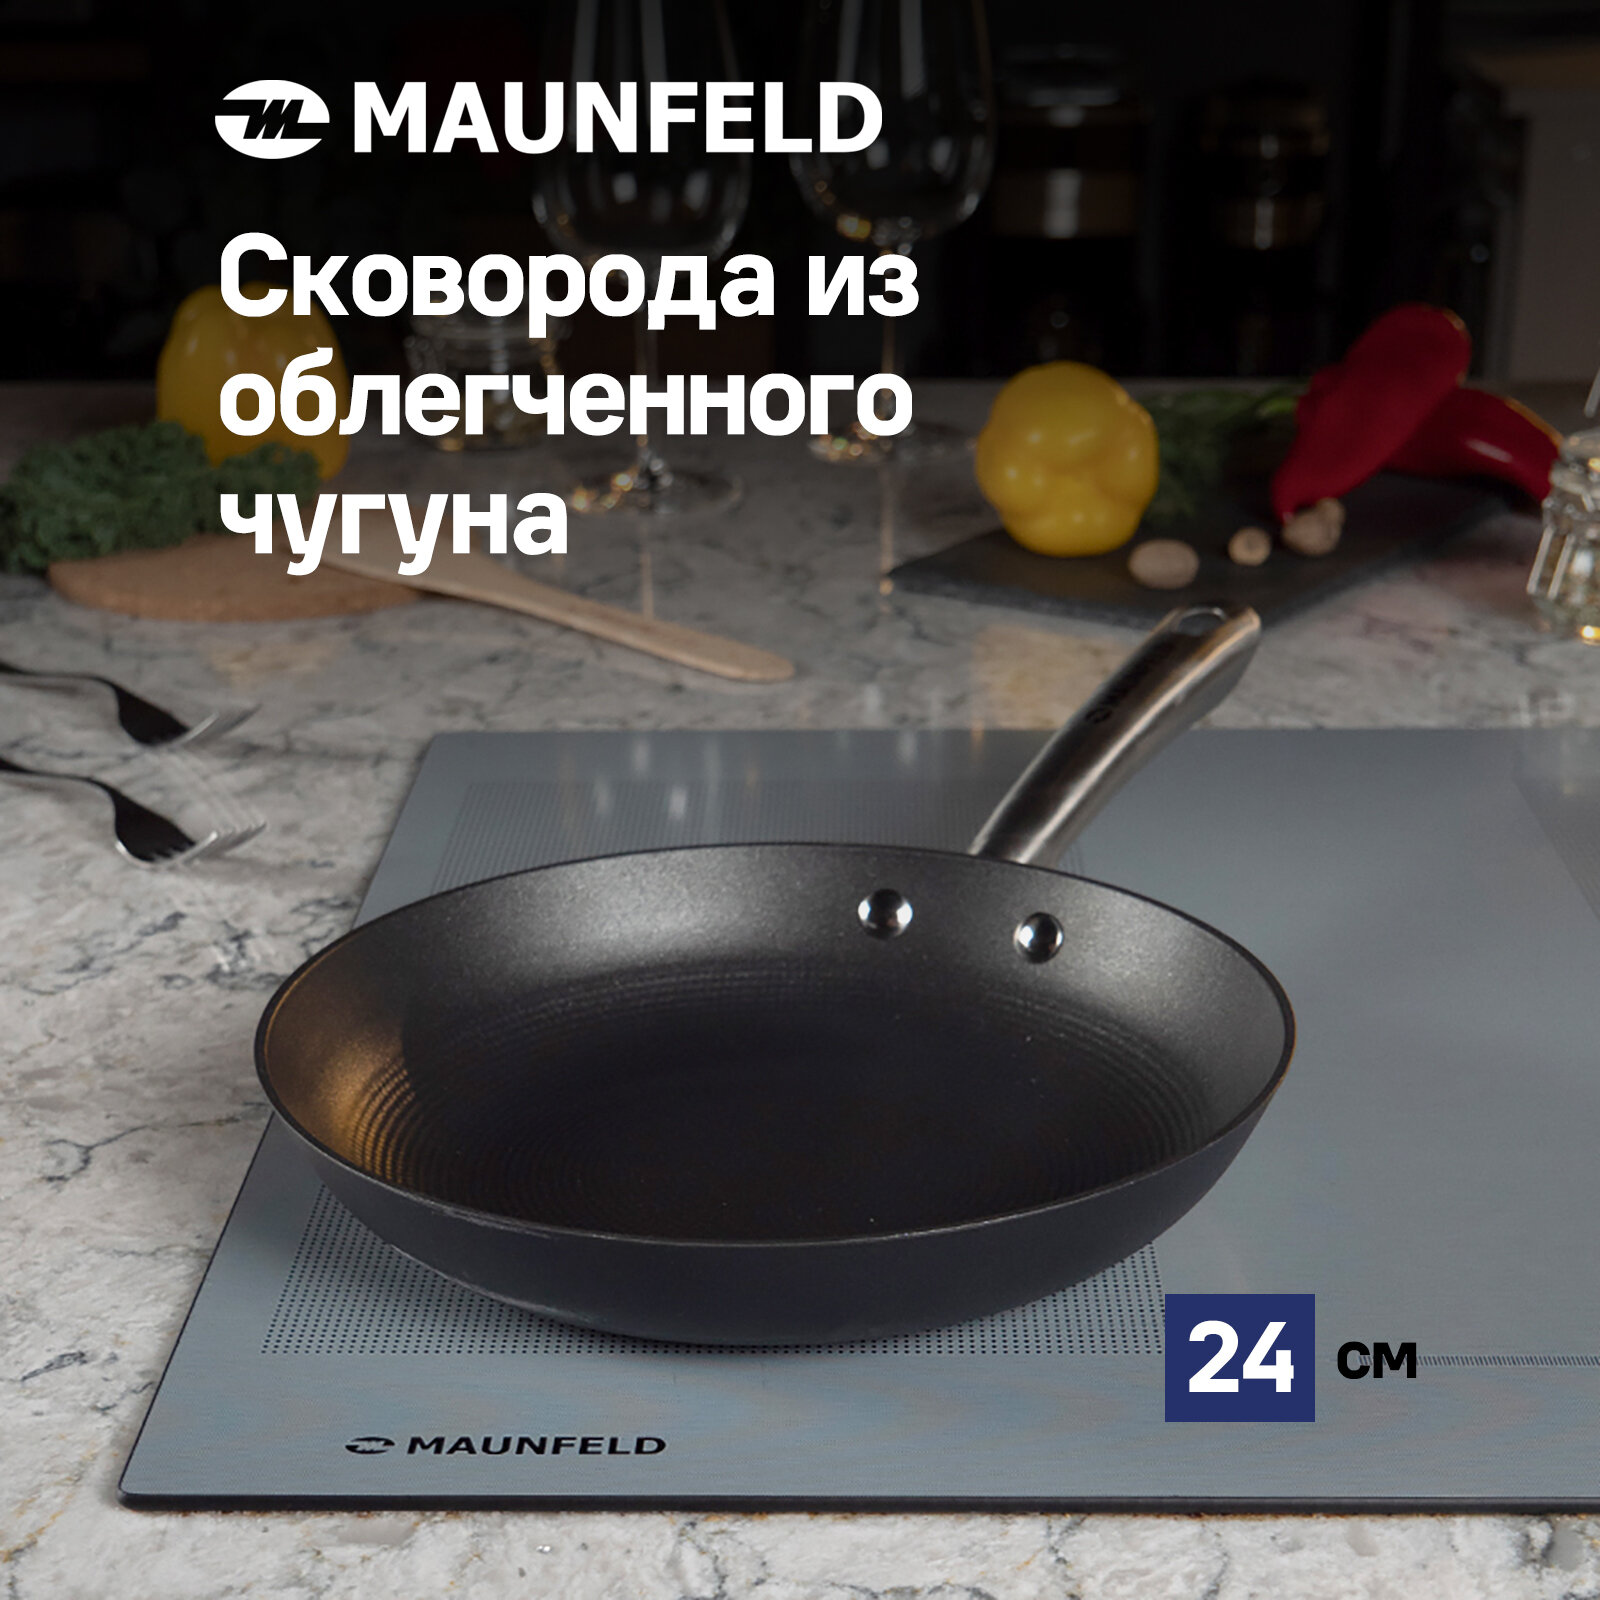 Сковорода MAUNFELD HOWARD MFP26LC15 из облегченного чугуна, 26 см